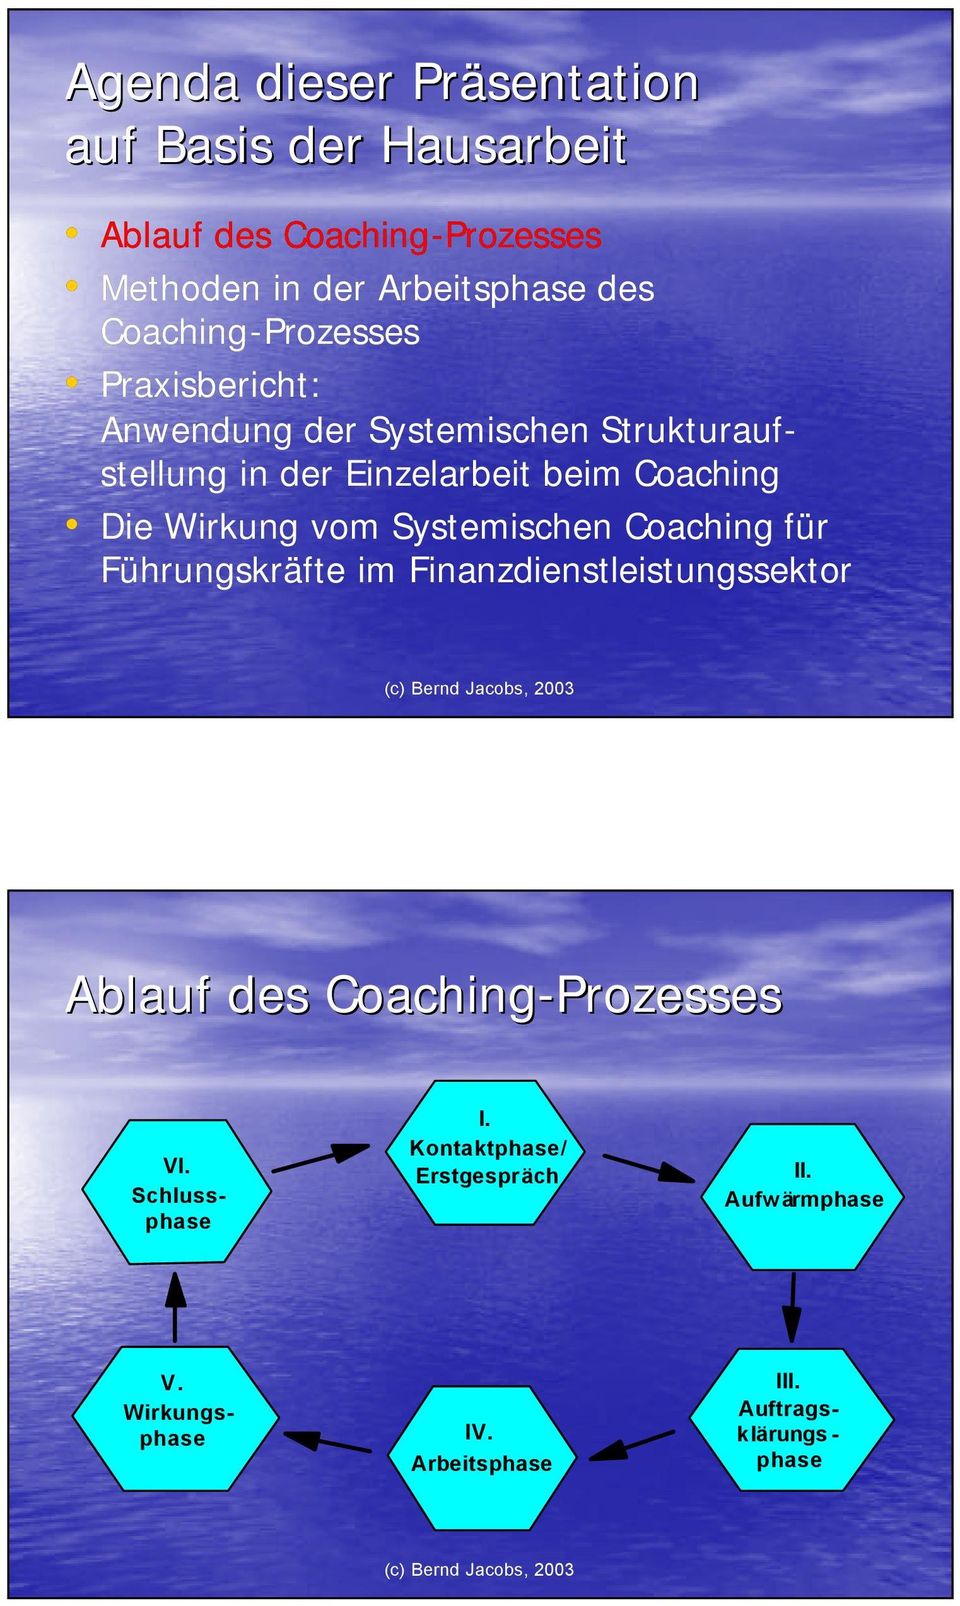 Die Wirkung vom Systemischen Coaching für Führungskräfte im Finanzdienstleistungssektor Ablauf des Coaching-Prozesses